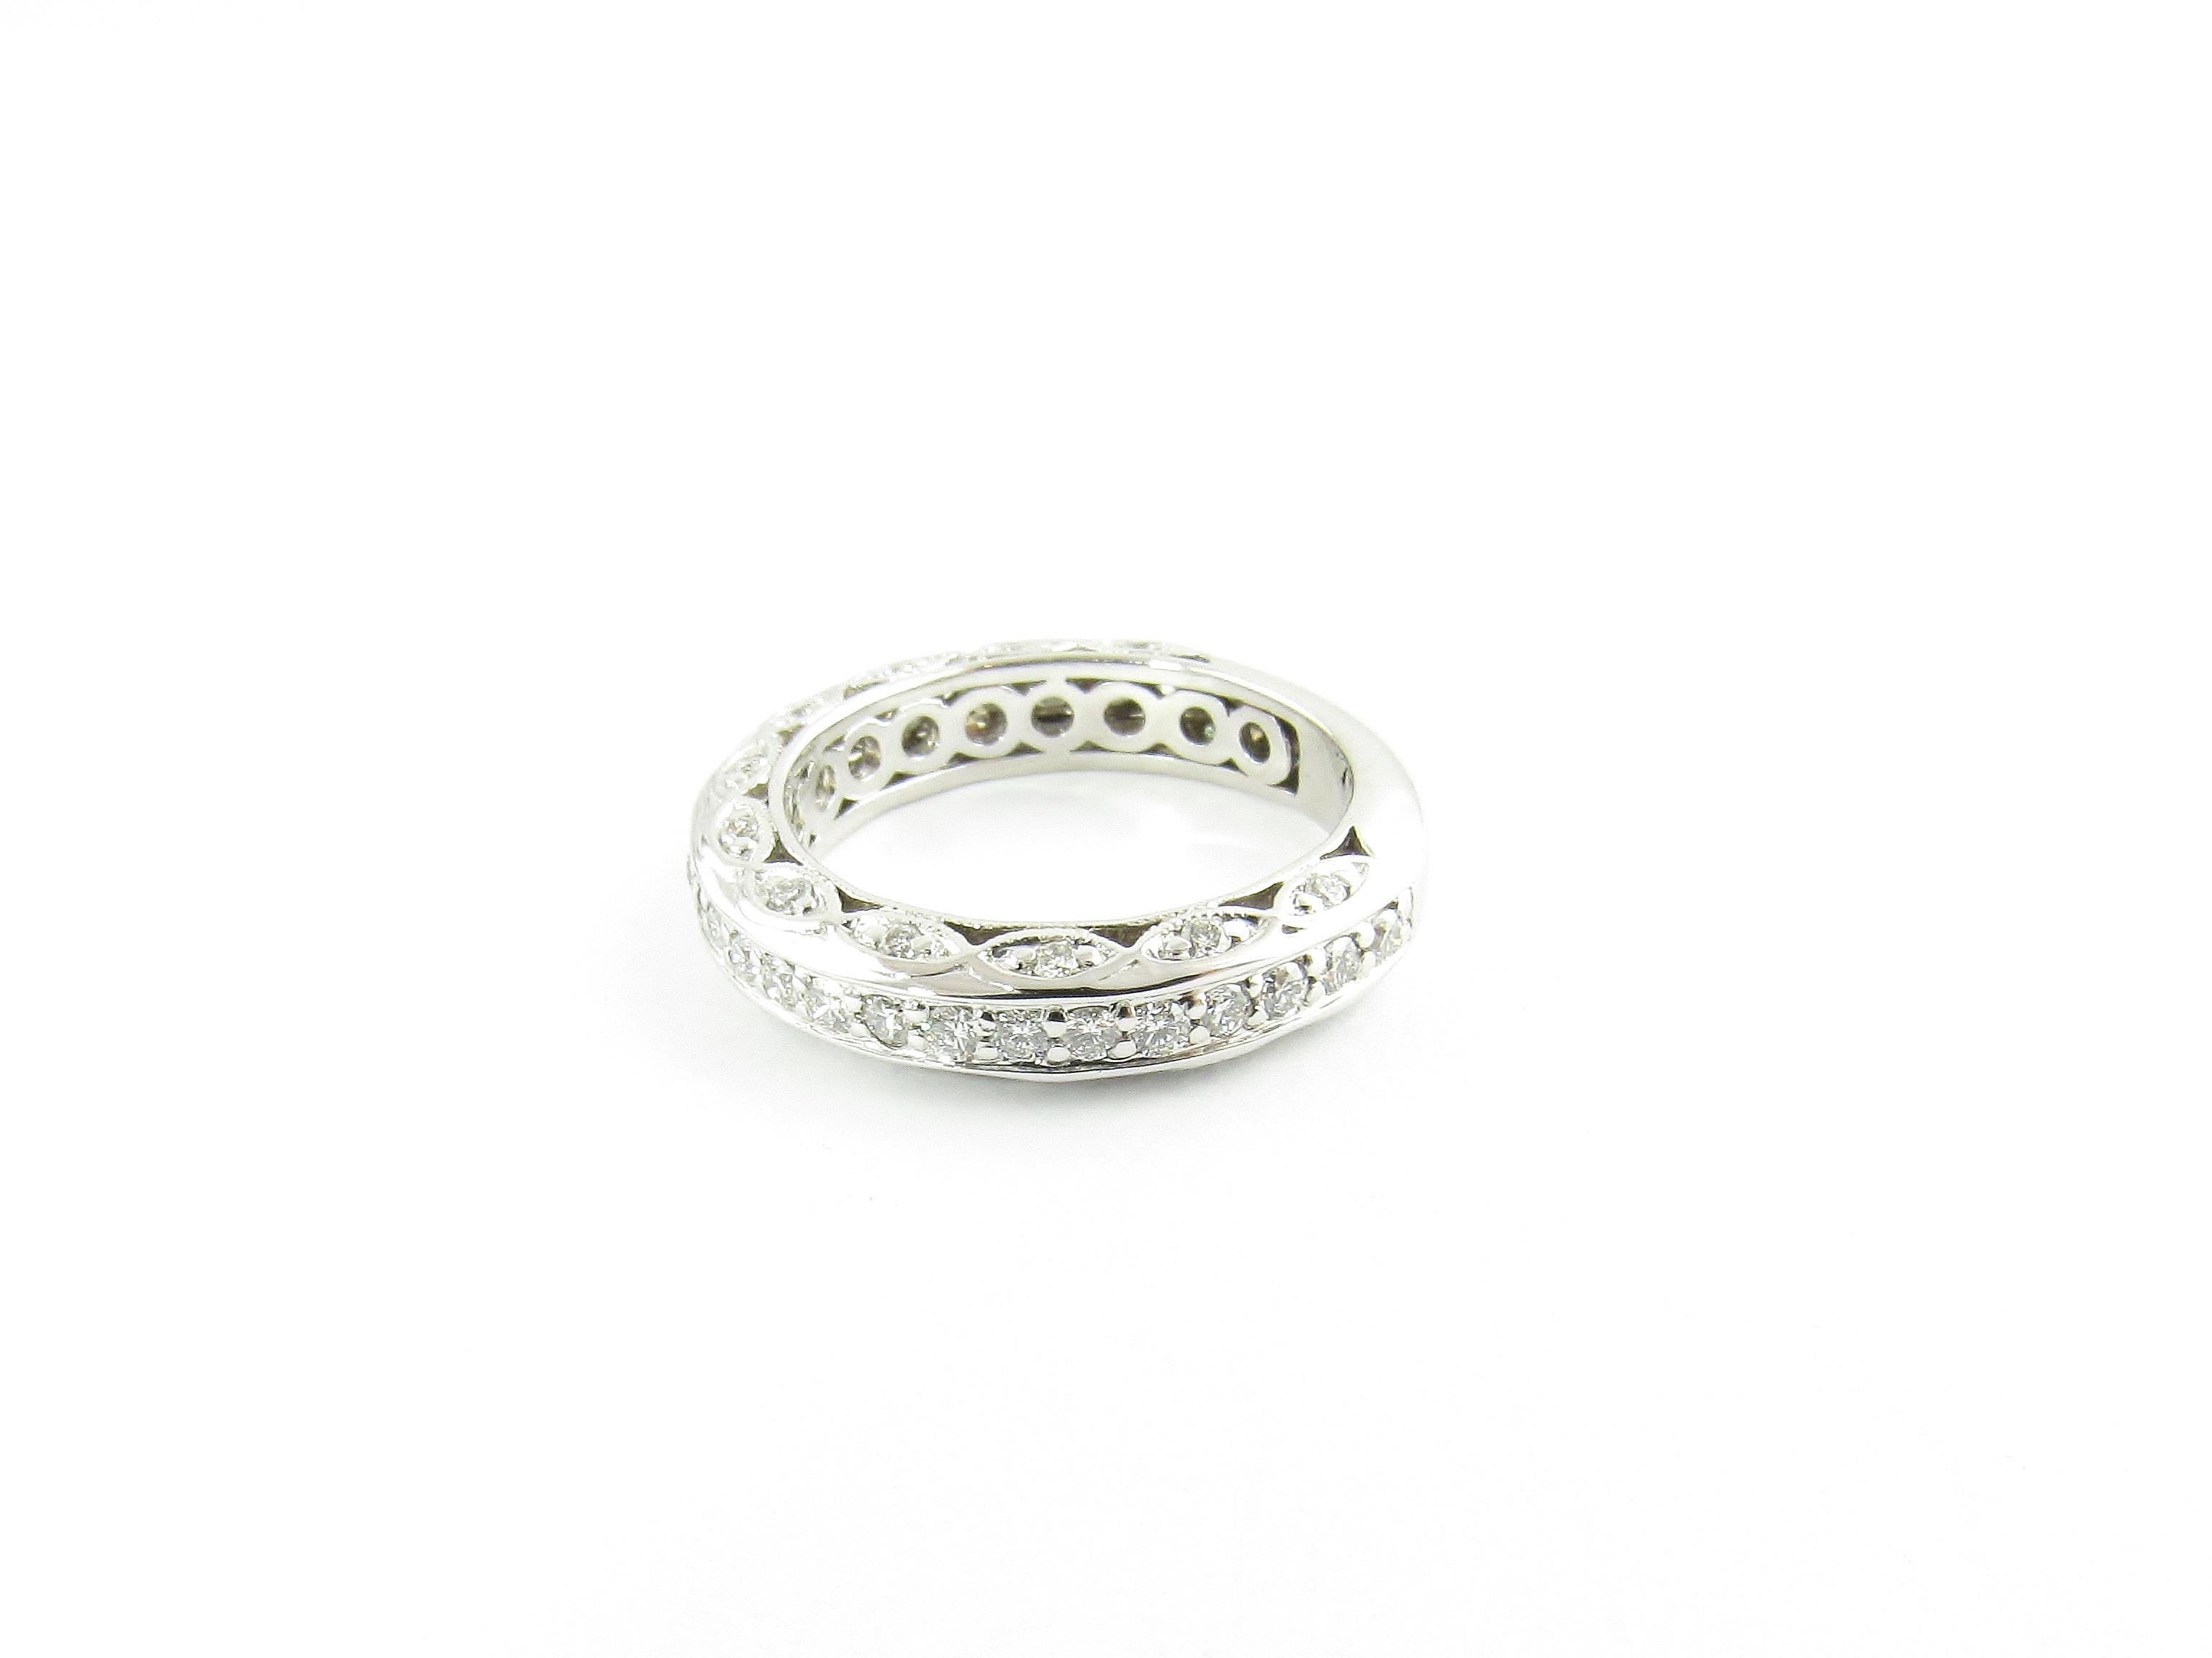 Vintage alliance en or blanc 14 carats avec diamant taille 4.5

Ce bracelet exquis comporte 49 diamants ronds de taille brillant qui scintillent sur le dessus et les deux côtés. Serti dans un or blanc 14K magnifiquement détaillé. Largeur : 4 mm.